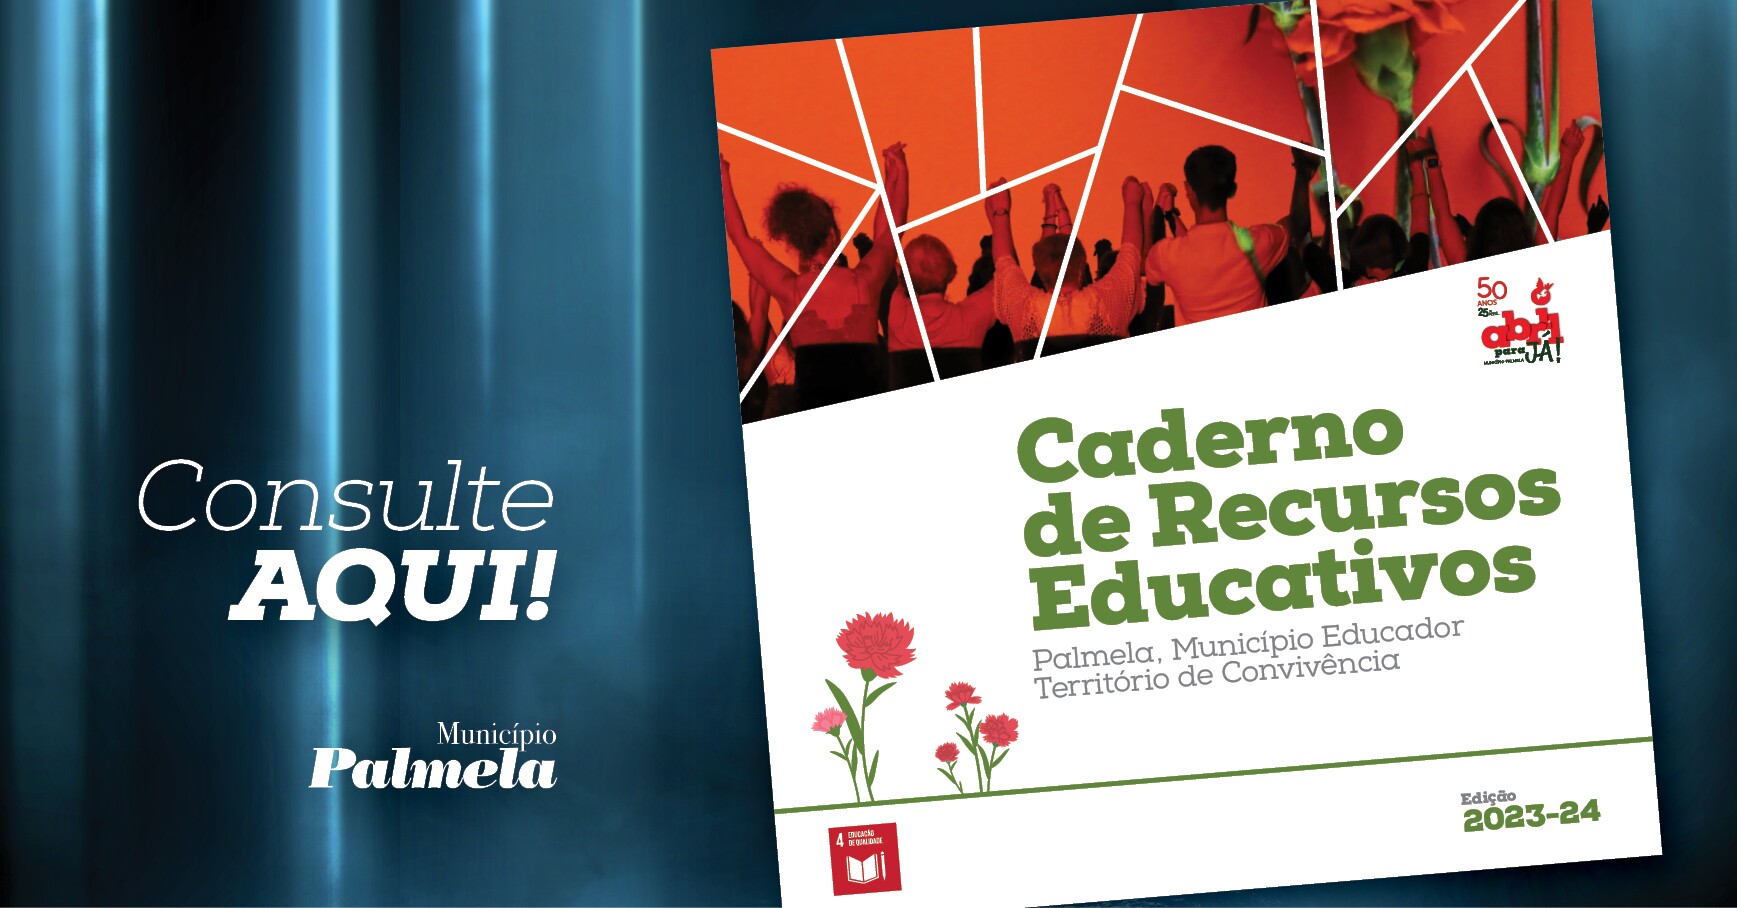 Caderno de Recursos Educativos 2023/2024 já disponível - consulte aqui